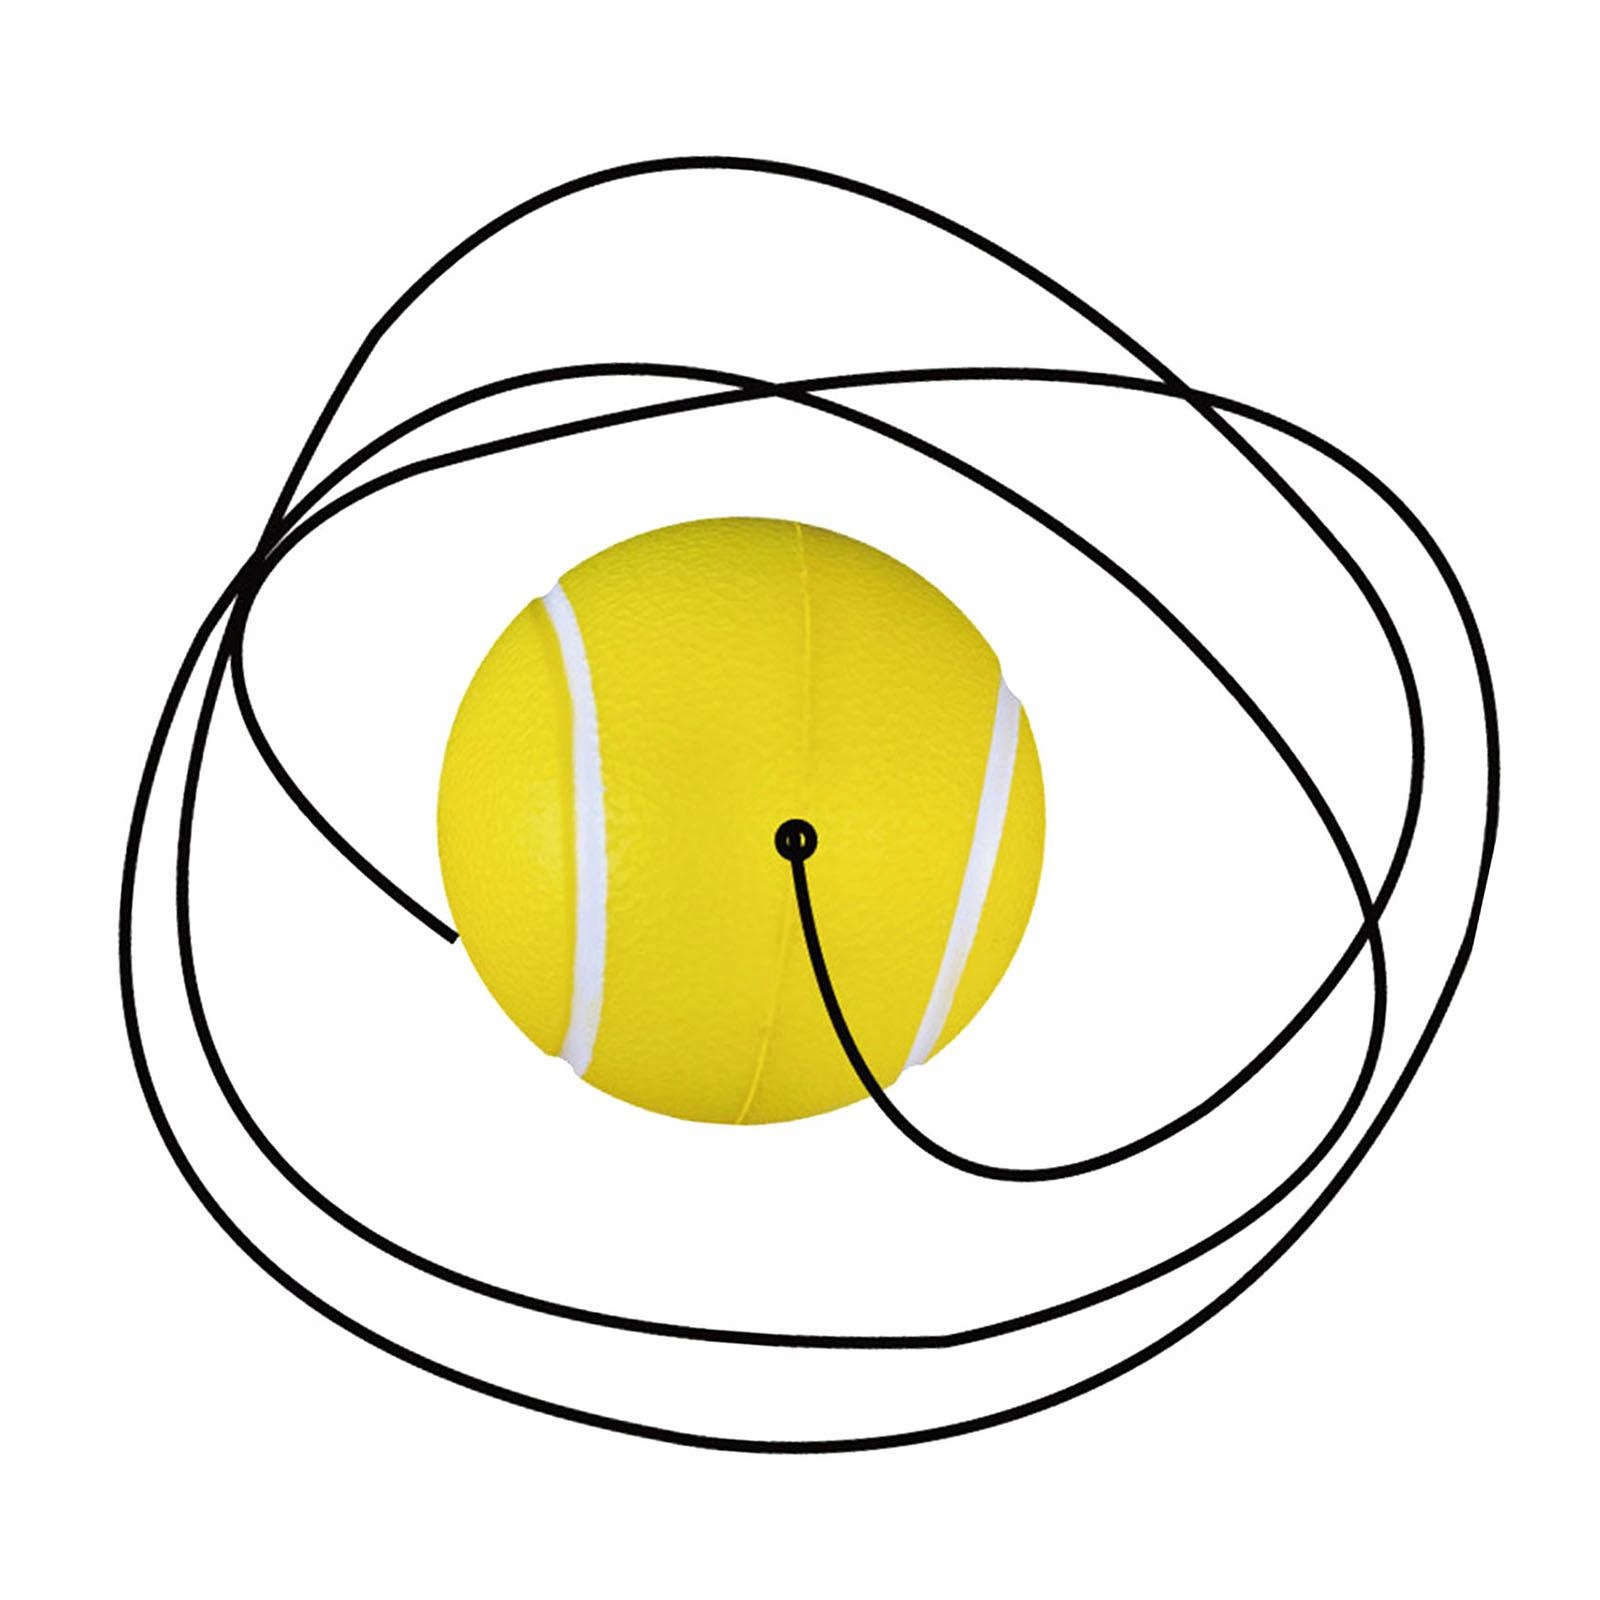 Теннисный мяч с тренировочным оборудованием на